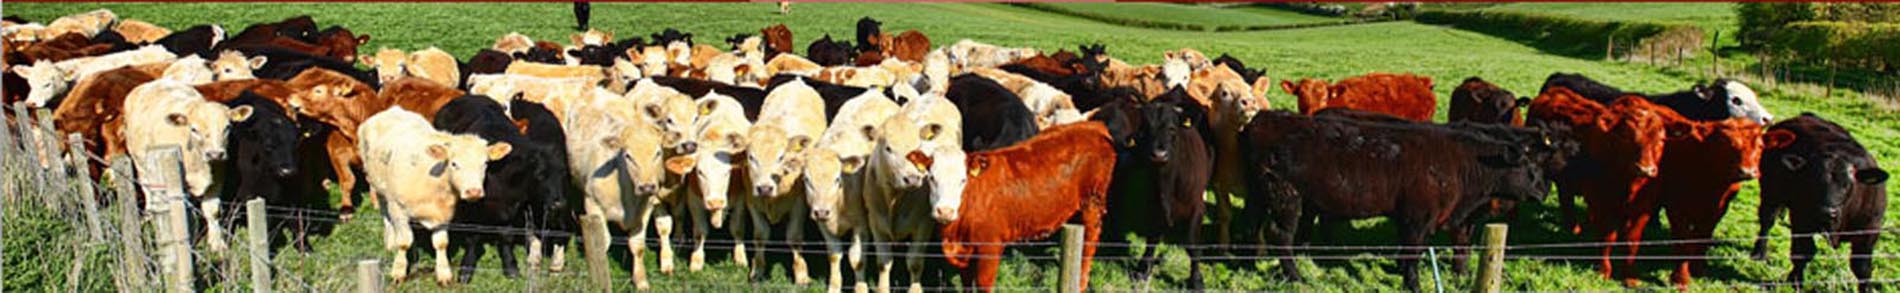 Comprar Bofe de Vaca por Mayor Frigorificos para Restaurantes Parrillas Menudencias Vacunas Embutidos Zona Norte Chacinados